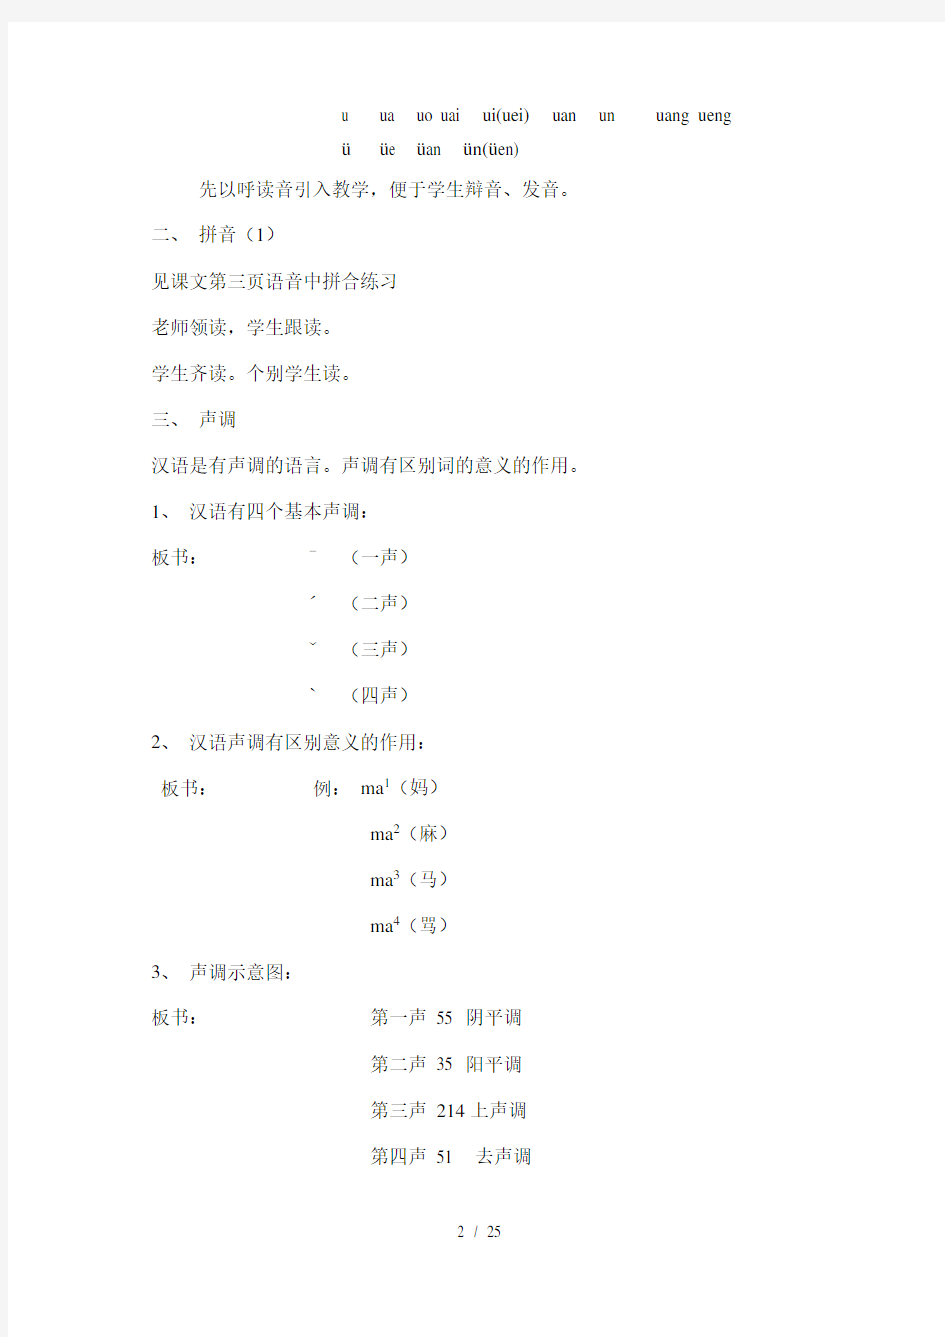 北京语言大学发展汉语初级汉语口语课教案